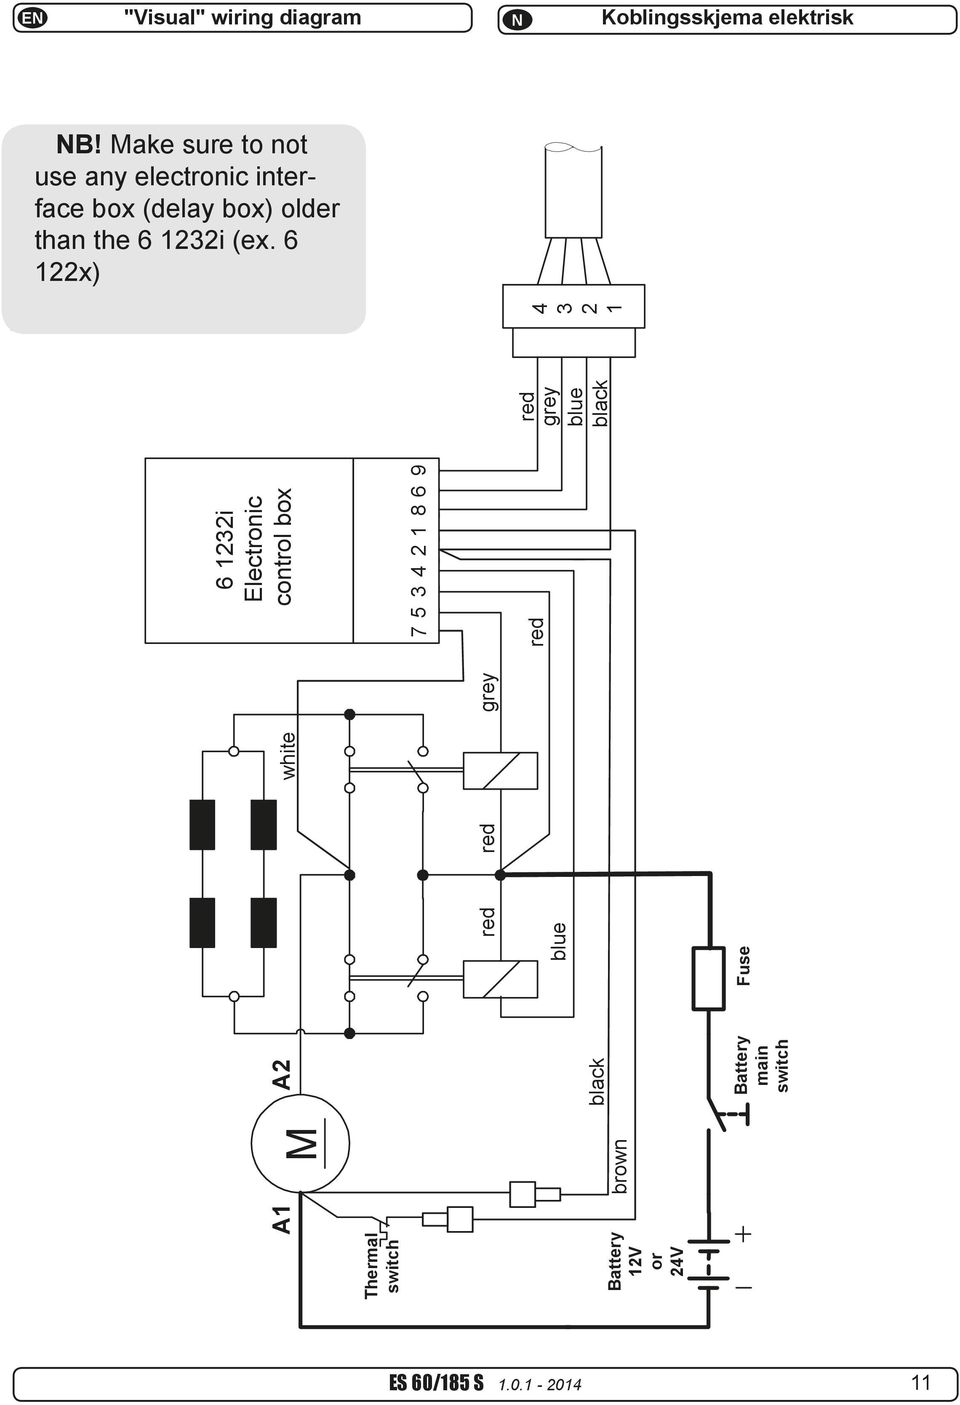 vetus bow thruster wiring diagram